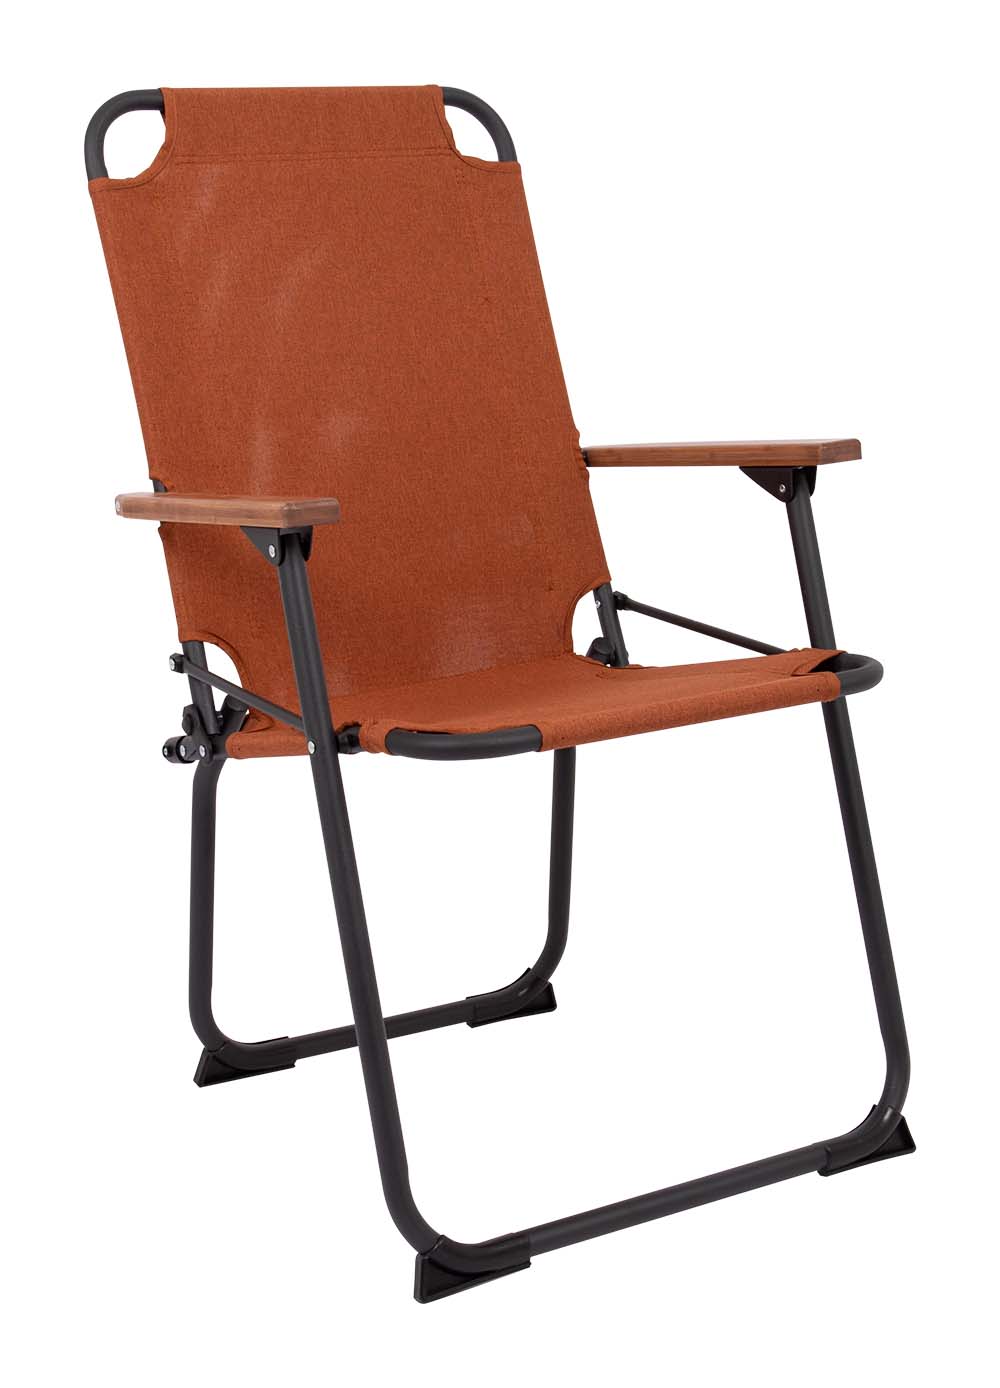 1211882 "Een klassieke en zeer compacte klapstoel met een moderne industriële uitstraling. Een stoel waarbij stijl, comfort en functionaliteit worden gecombineerd. Voorzien van een Cationic bekleding, een lichtgewicht aluminium frame en bamboe armleggers. Een ideale stoel voor in de tuin of op de camping, maar ook op het balkon en in de woonkamer. Daarnaast is deze stoel voorzien van extra stabilisatoren en een 'safety-lock' tegen ongewenst inklappen. Compact mee te nemen."